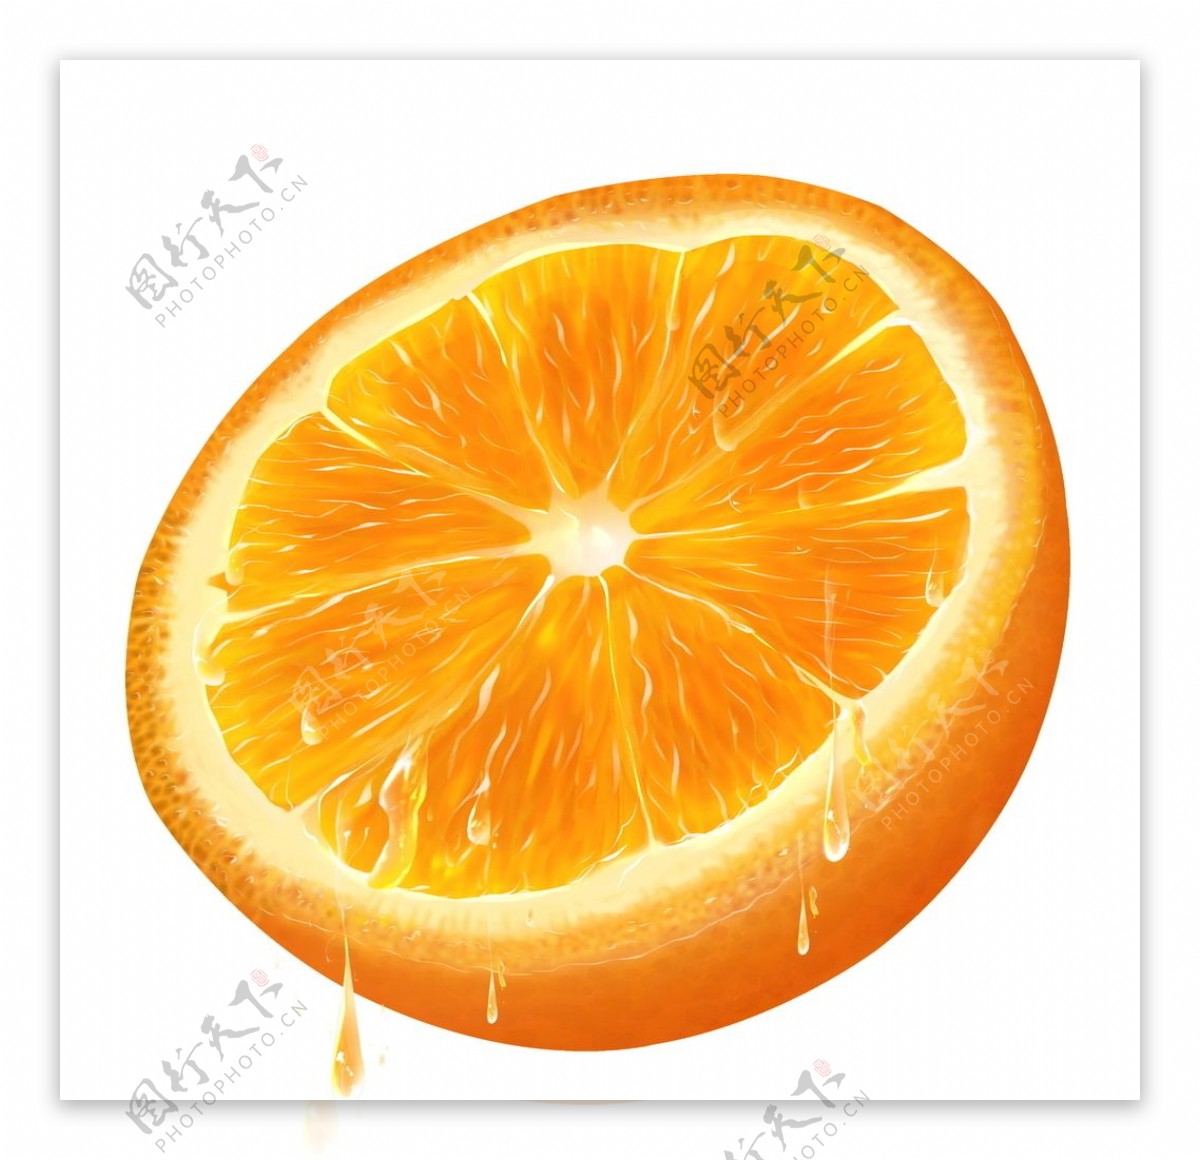 橙子横切面 合成